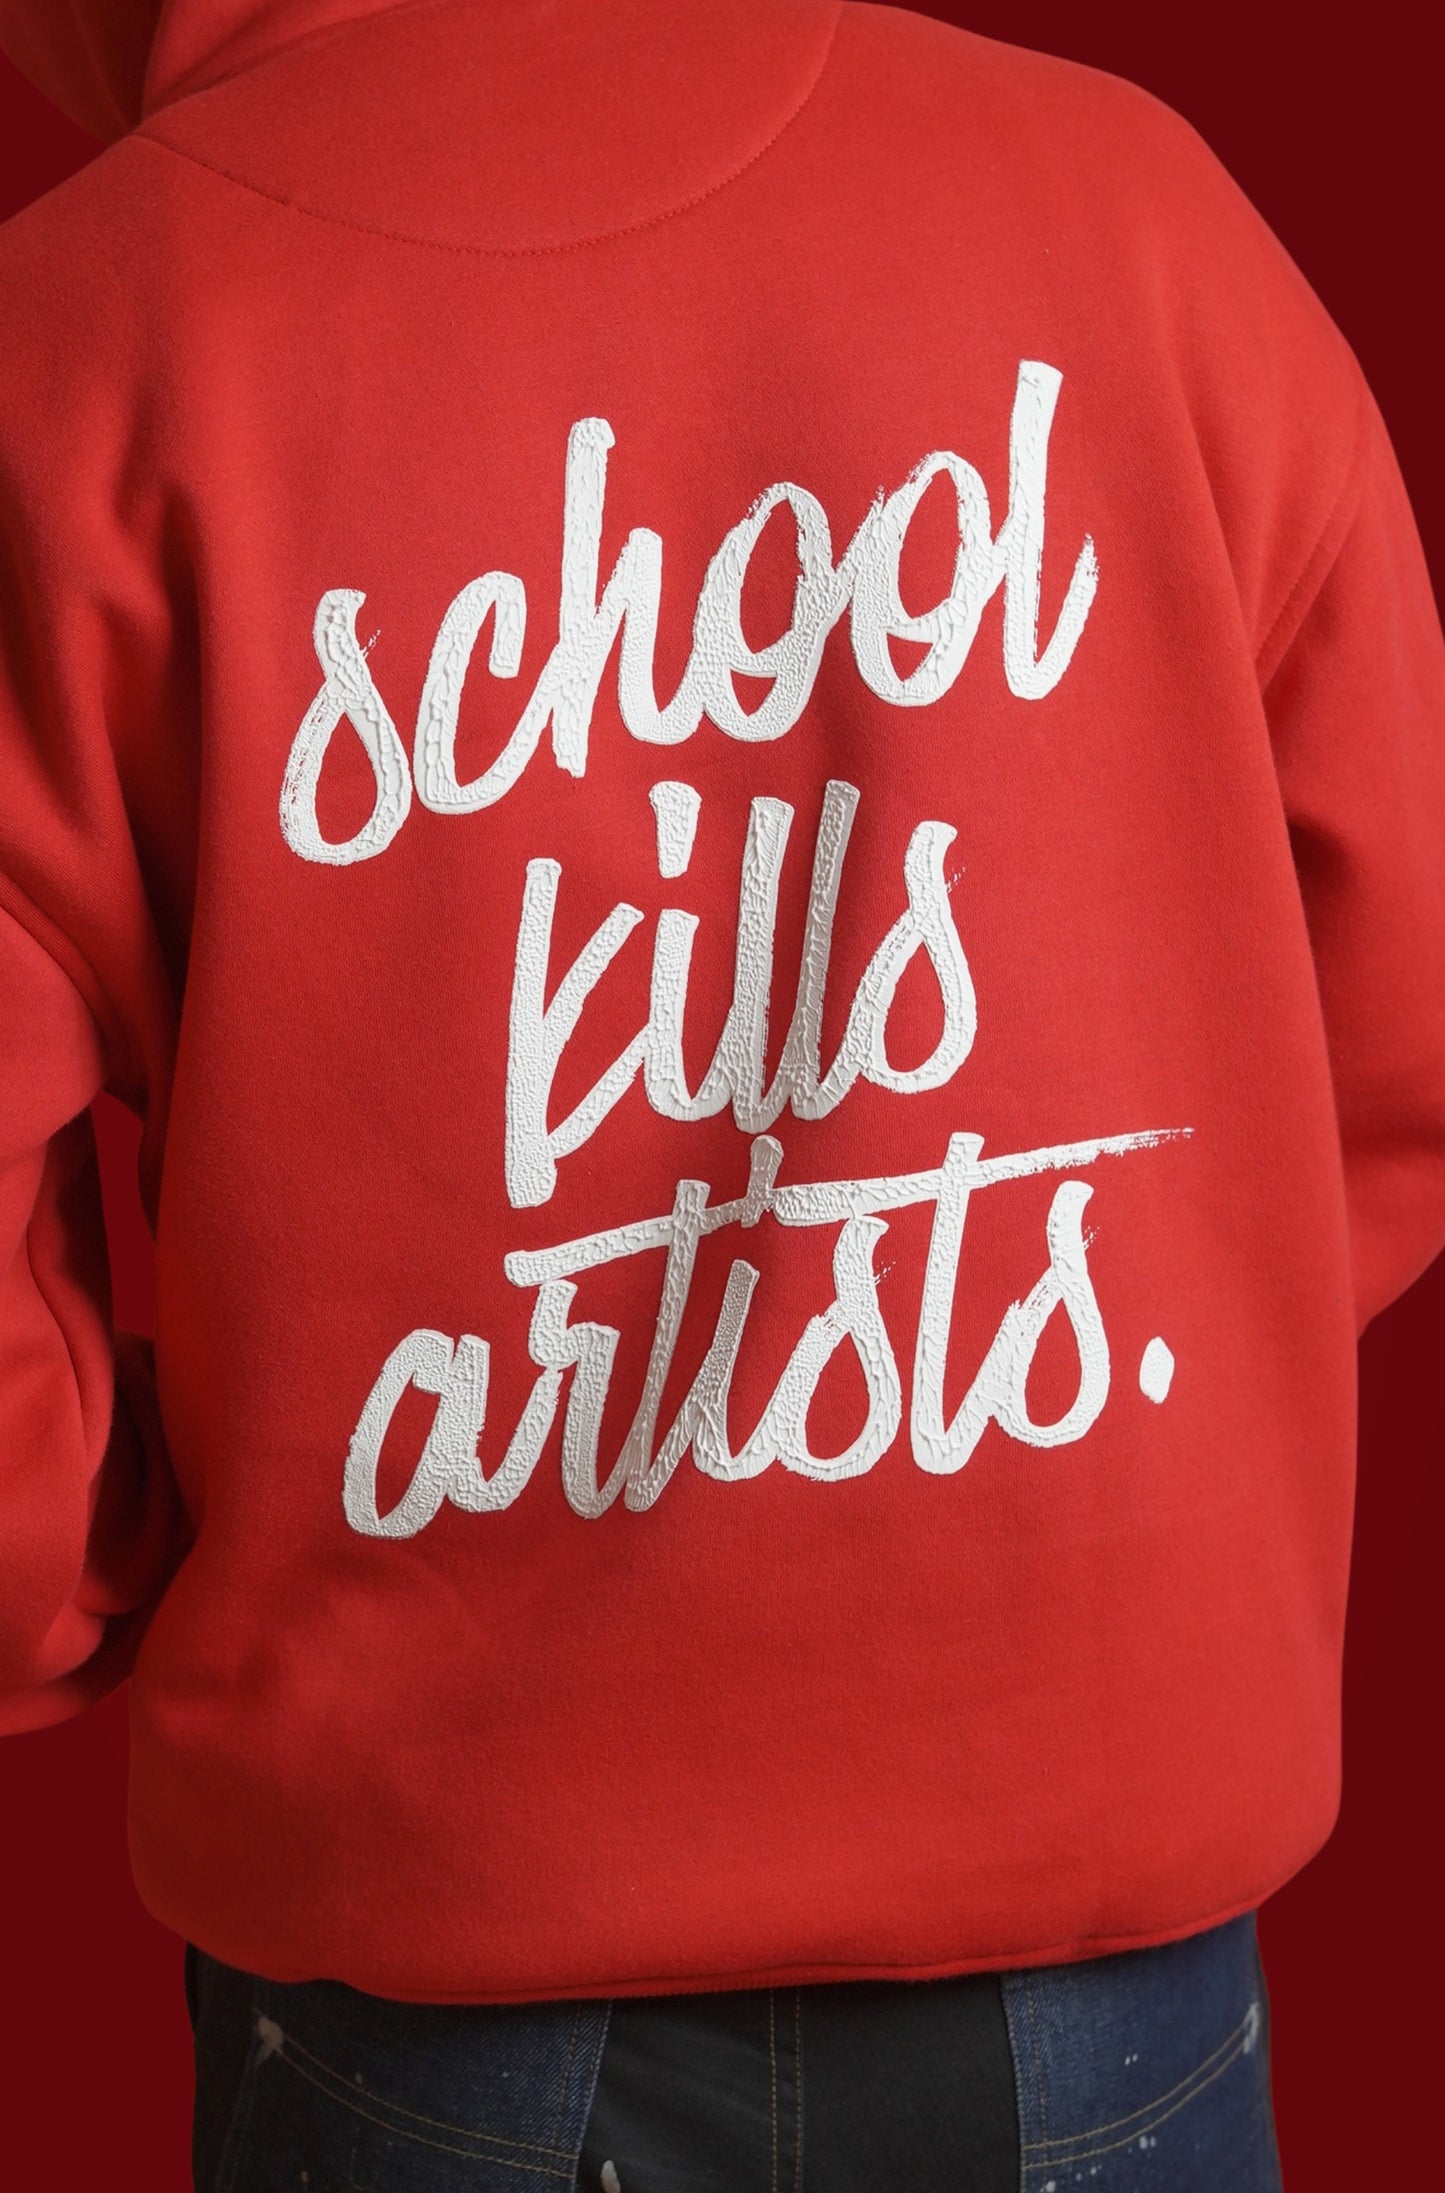 school kill artists.